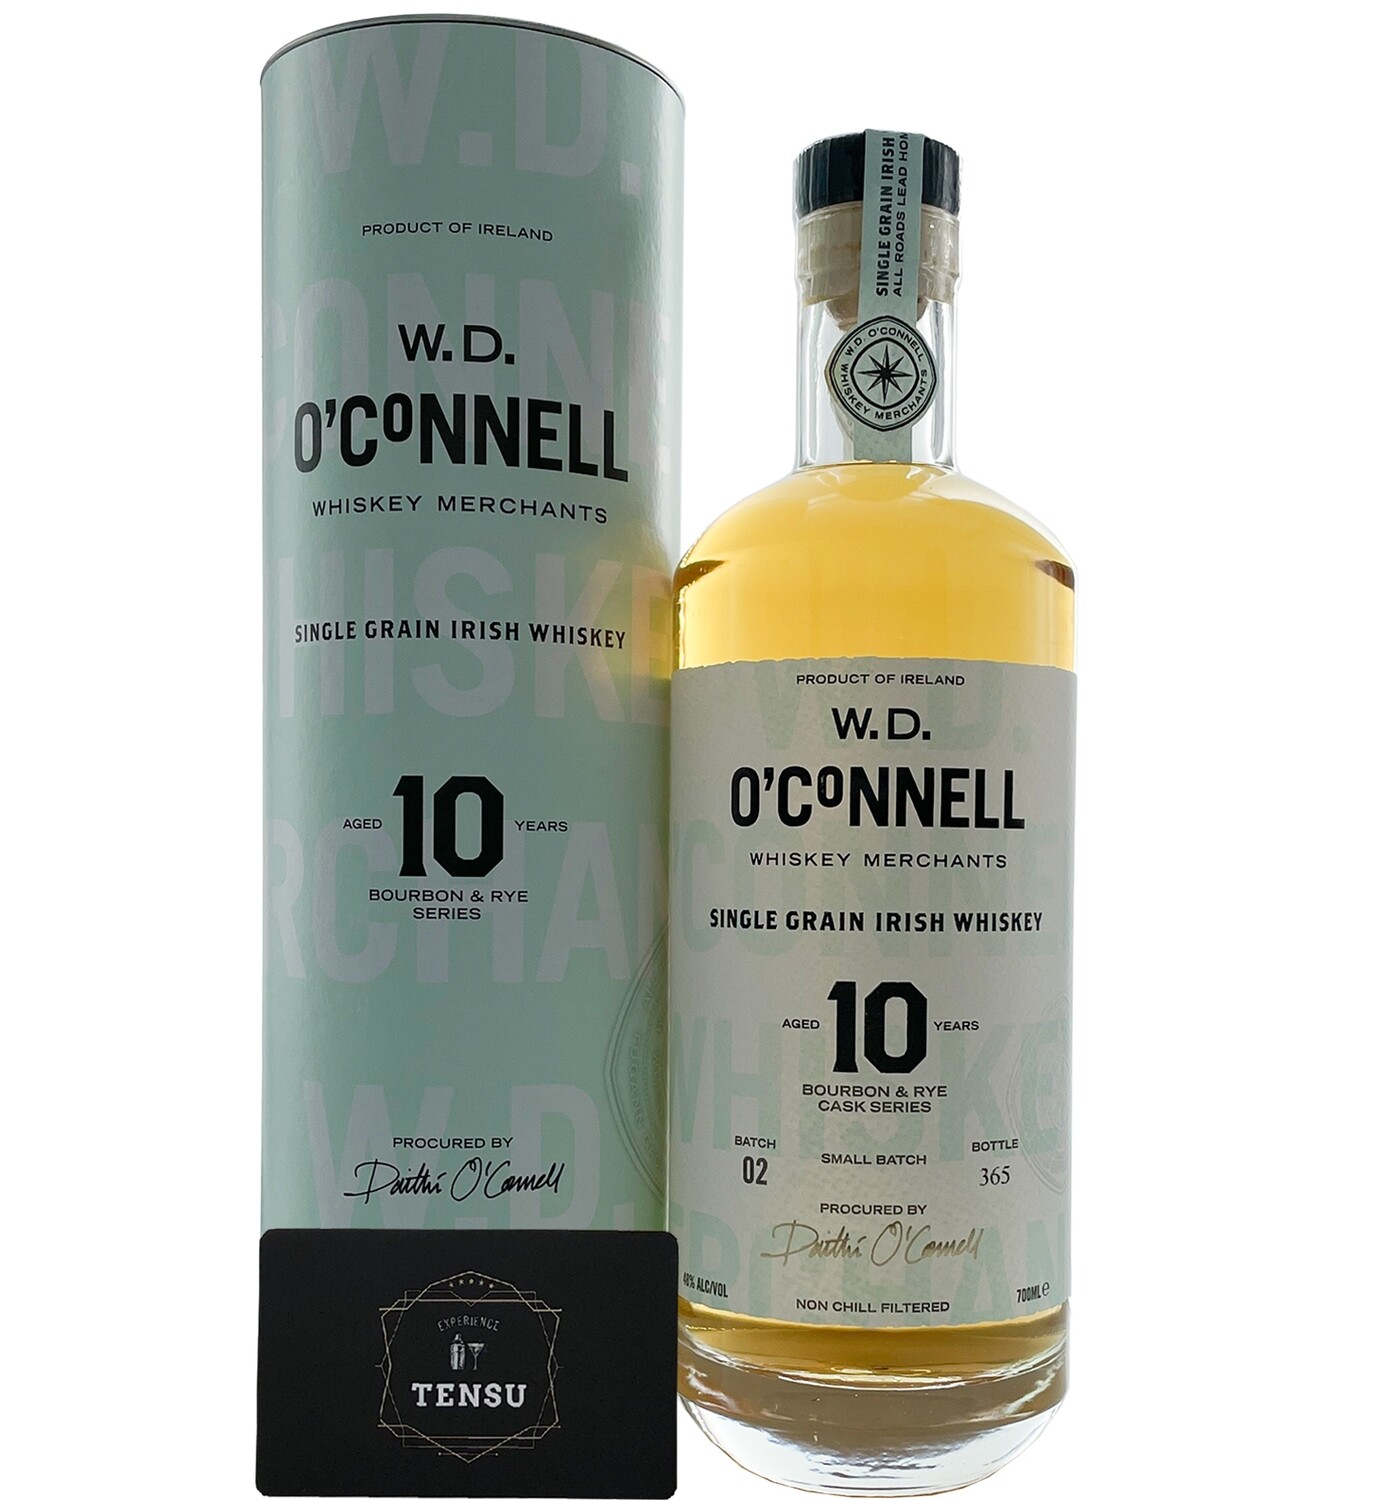 W.D. O' Connell 10Y (Batch 02) Bourbon & Rye Series 48,0 "OCWM"